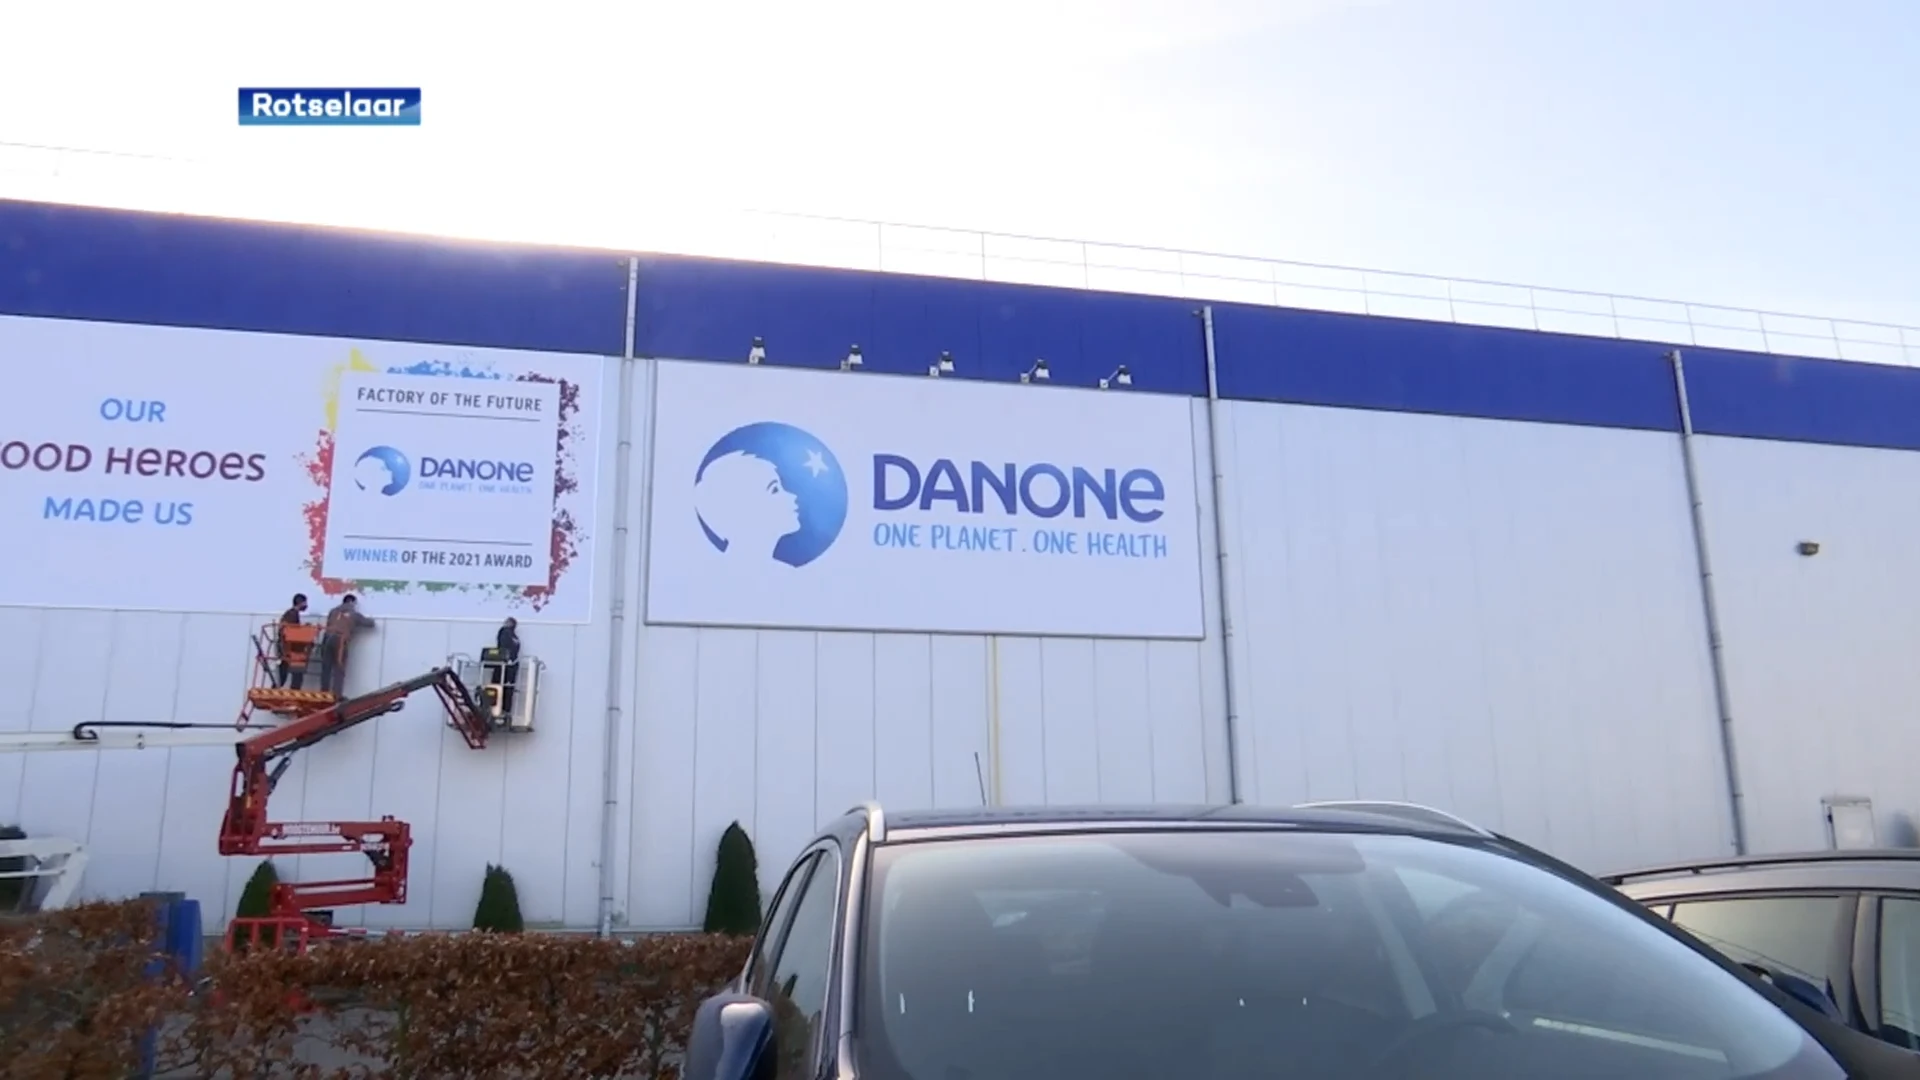 Zuivelfabriek Danone in Rotselaar uitgeroepen tot 'Fabriek van de Toekomst'